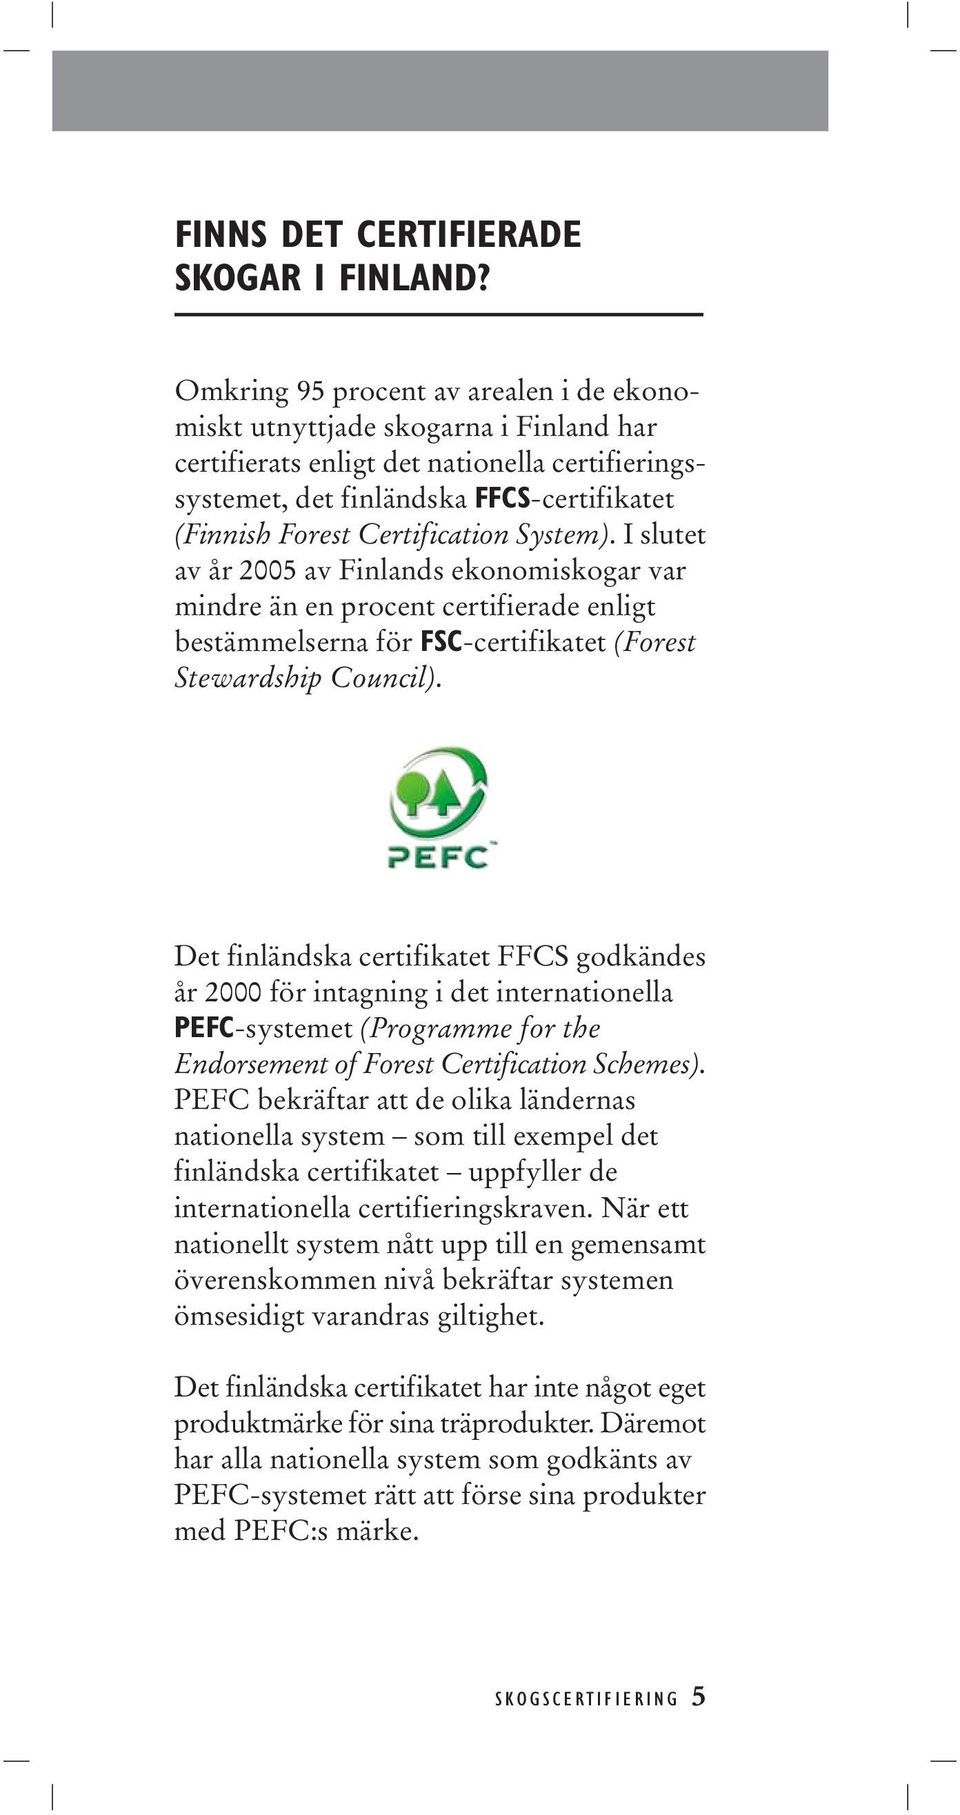 Certification System). I slutet av år 2005 av Finlands ekonomiskogar var mindre än en procent certifierade enligt bestämmelserna för FSC-certifikatet (Forest Stewardship Council).